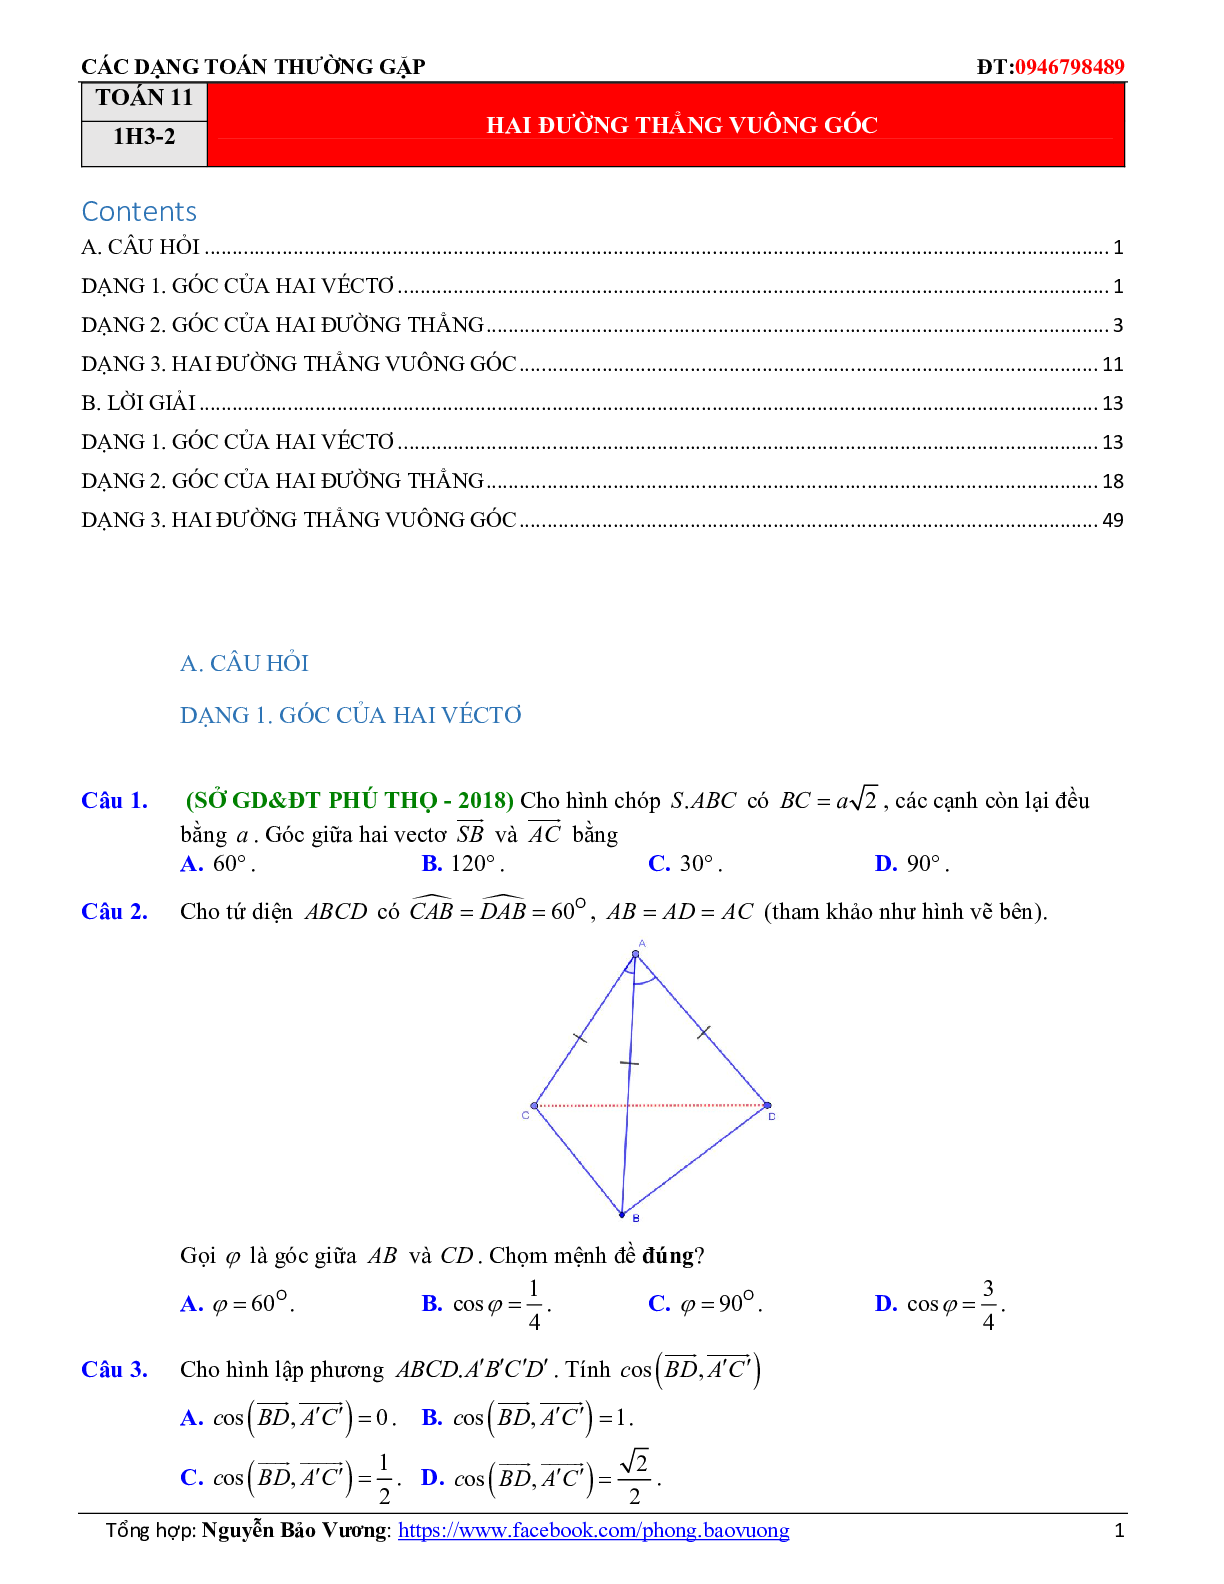 Bài tập trắc nghiệm hai đường thẳng vuông góc có đáp án và lời giải 2023 (trang 1)